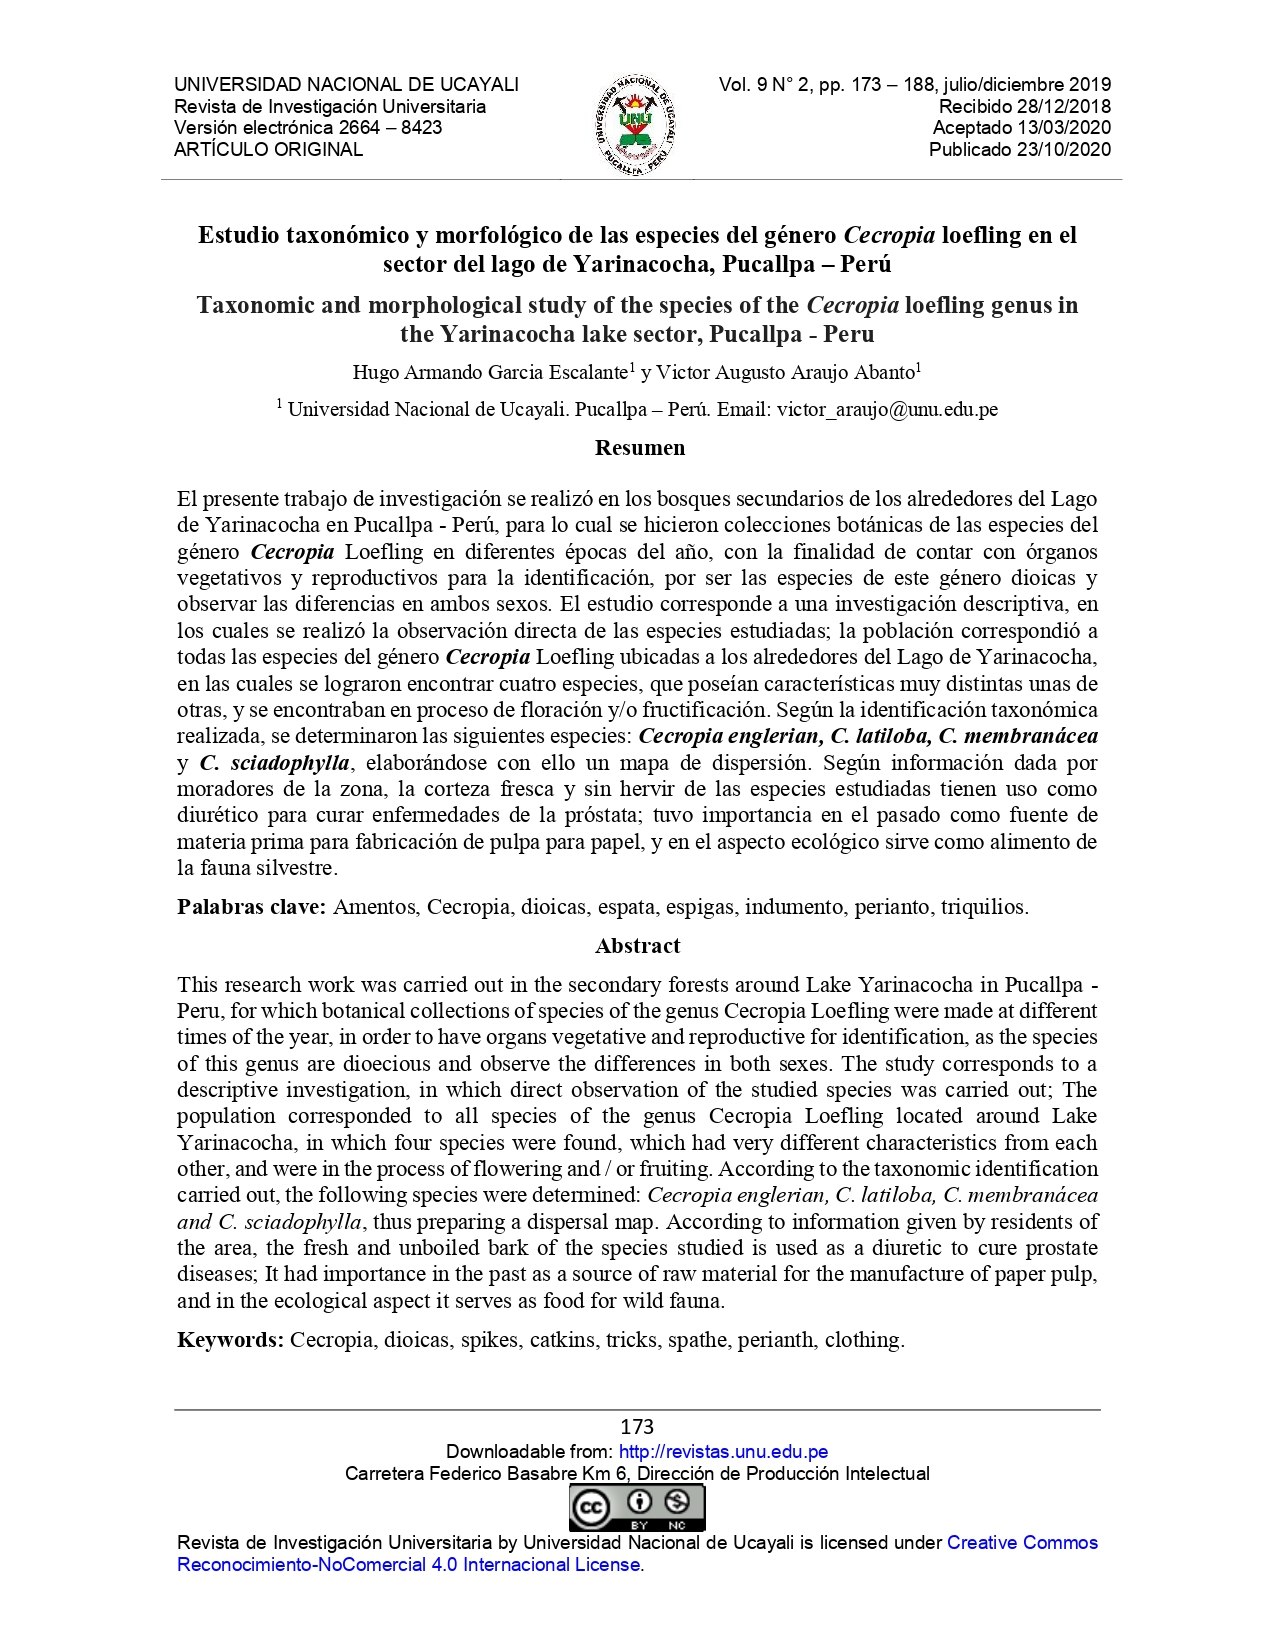 Estudio taxonómico y morfológico de las especies del género Cecropia loefling en el sector del lago de Yarinacocha, Pucallpa – Perú